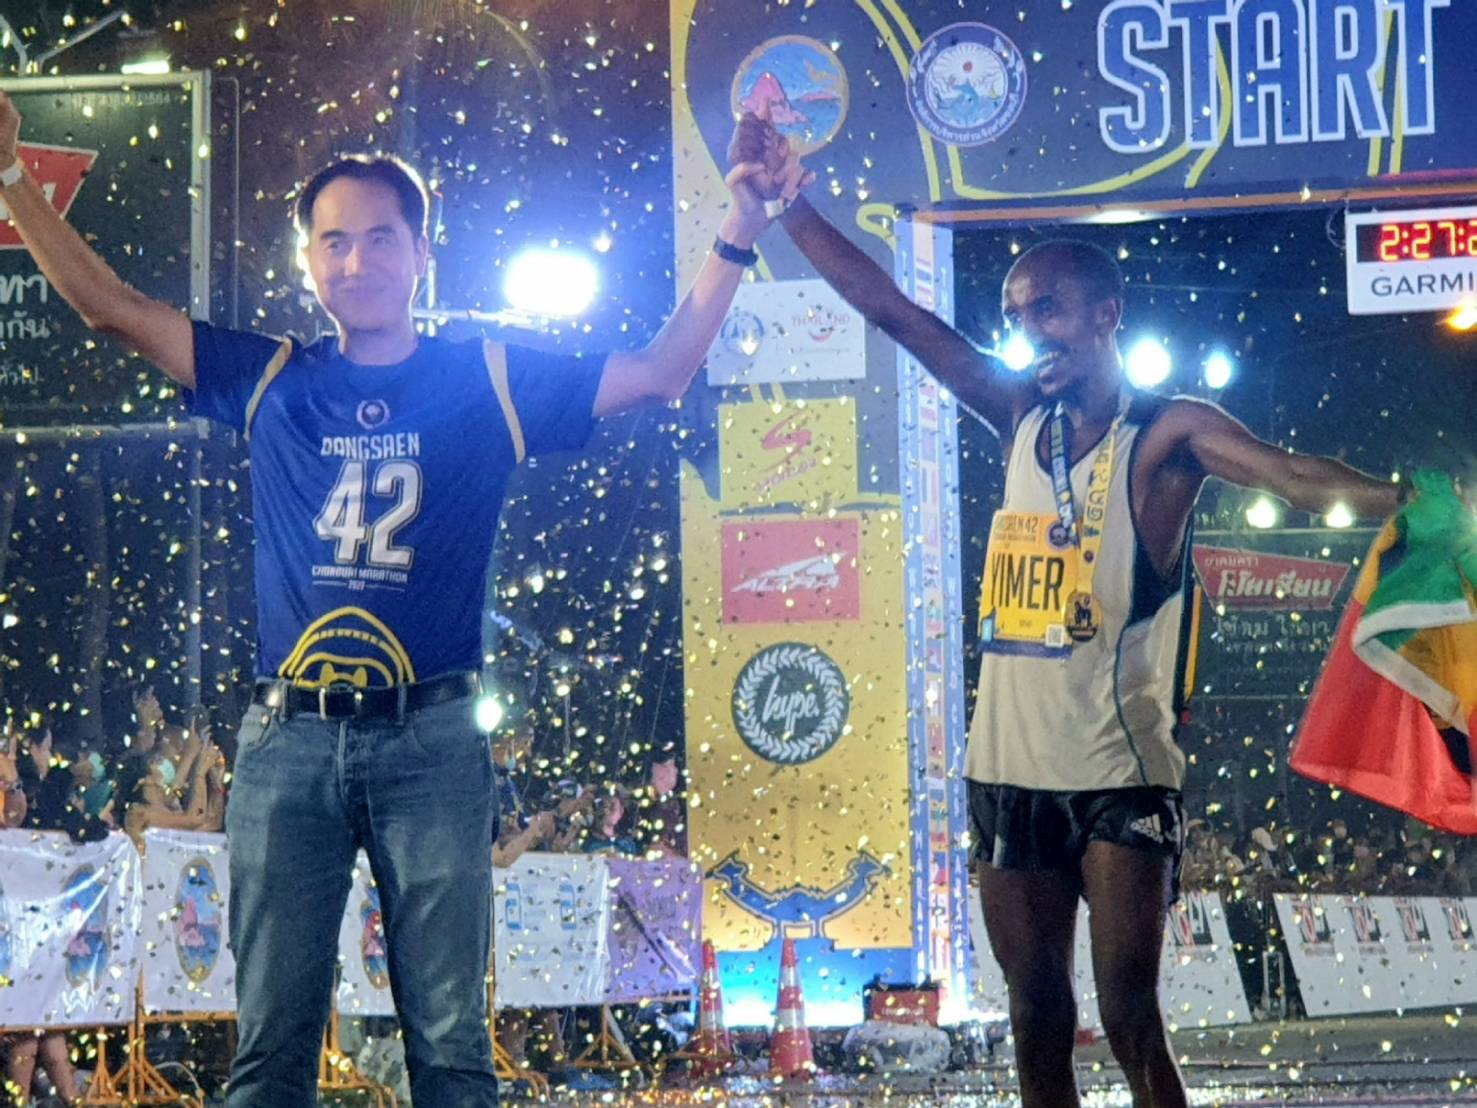 นักวิ่งปอดเหล็กเอธิโอเปีย ควงคู่สาวเคนย่า คว้าแชมป์ บางแสน42 ชลบุรีมาราธอน